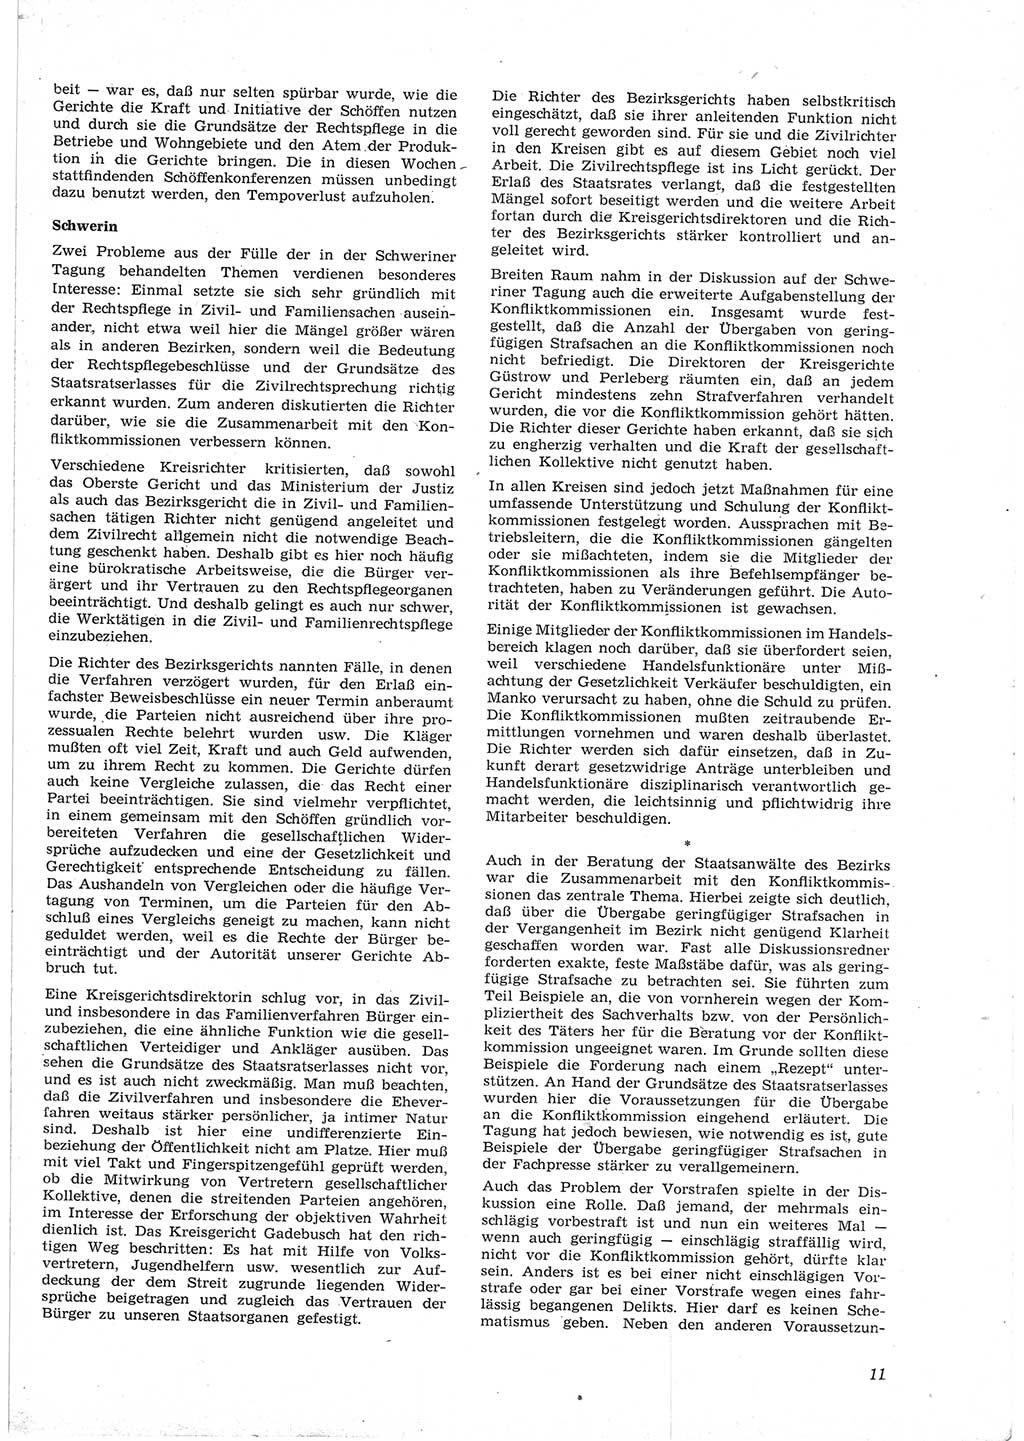 Neue Justiz (NJ), Zeitschrift für Recht und Rechtswissenschaft [Deutsche Demokratische Republik (DDR)], 17. Jahrgang 1963, Seite 11 (NJ DDR 1963, S. 11)